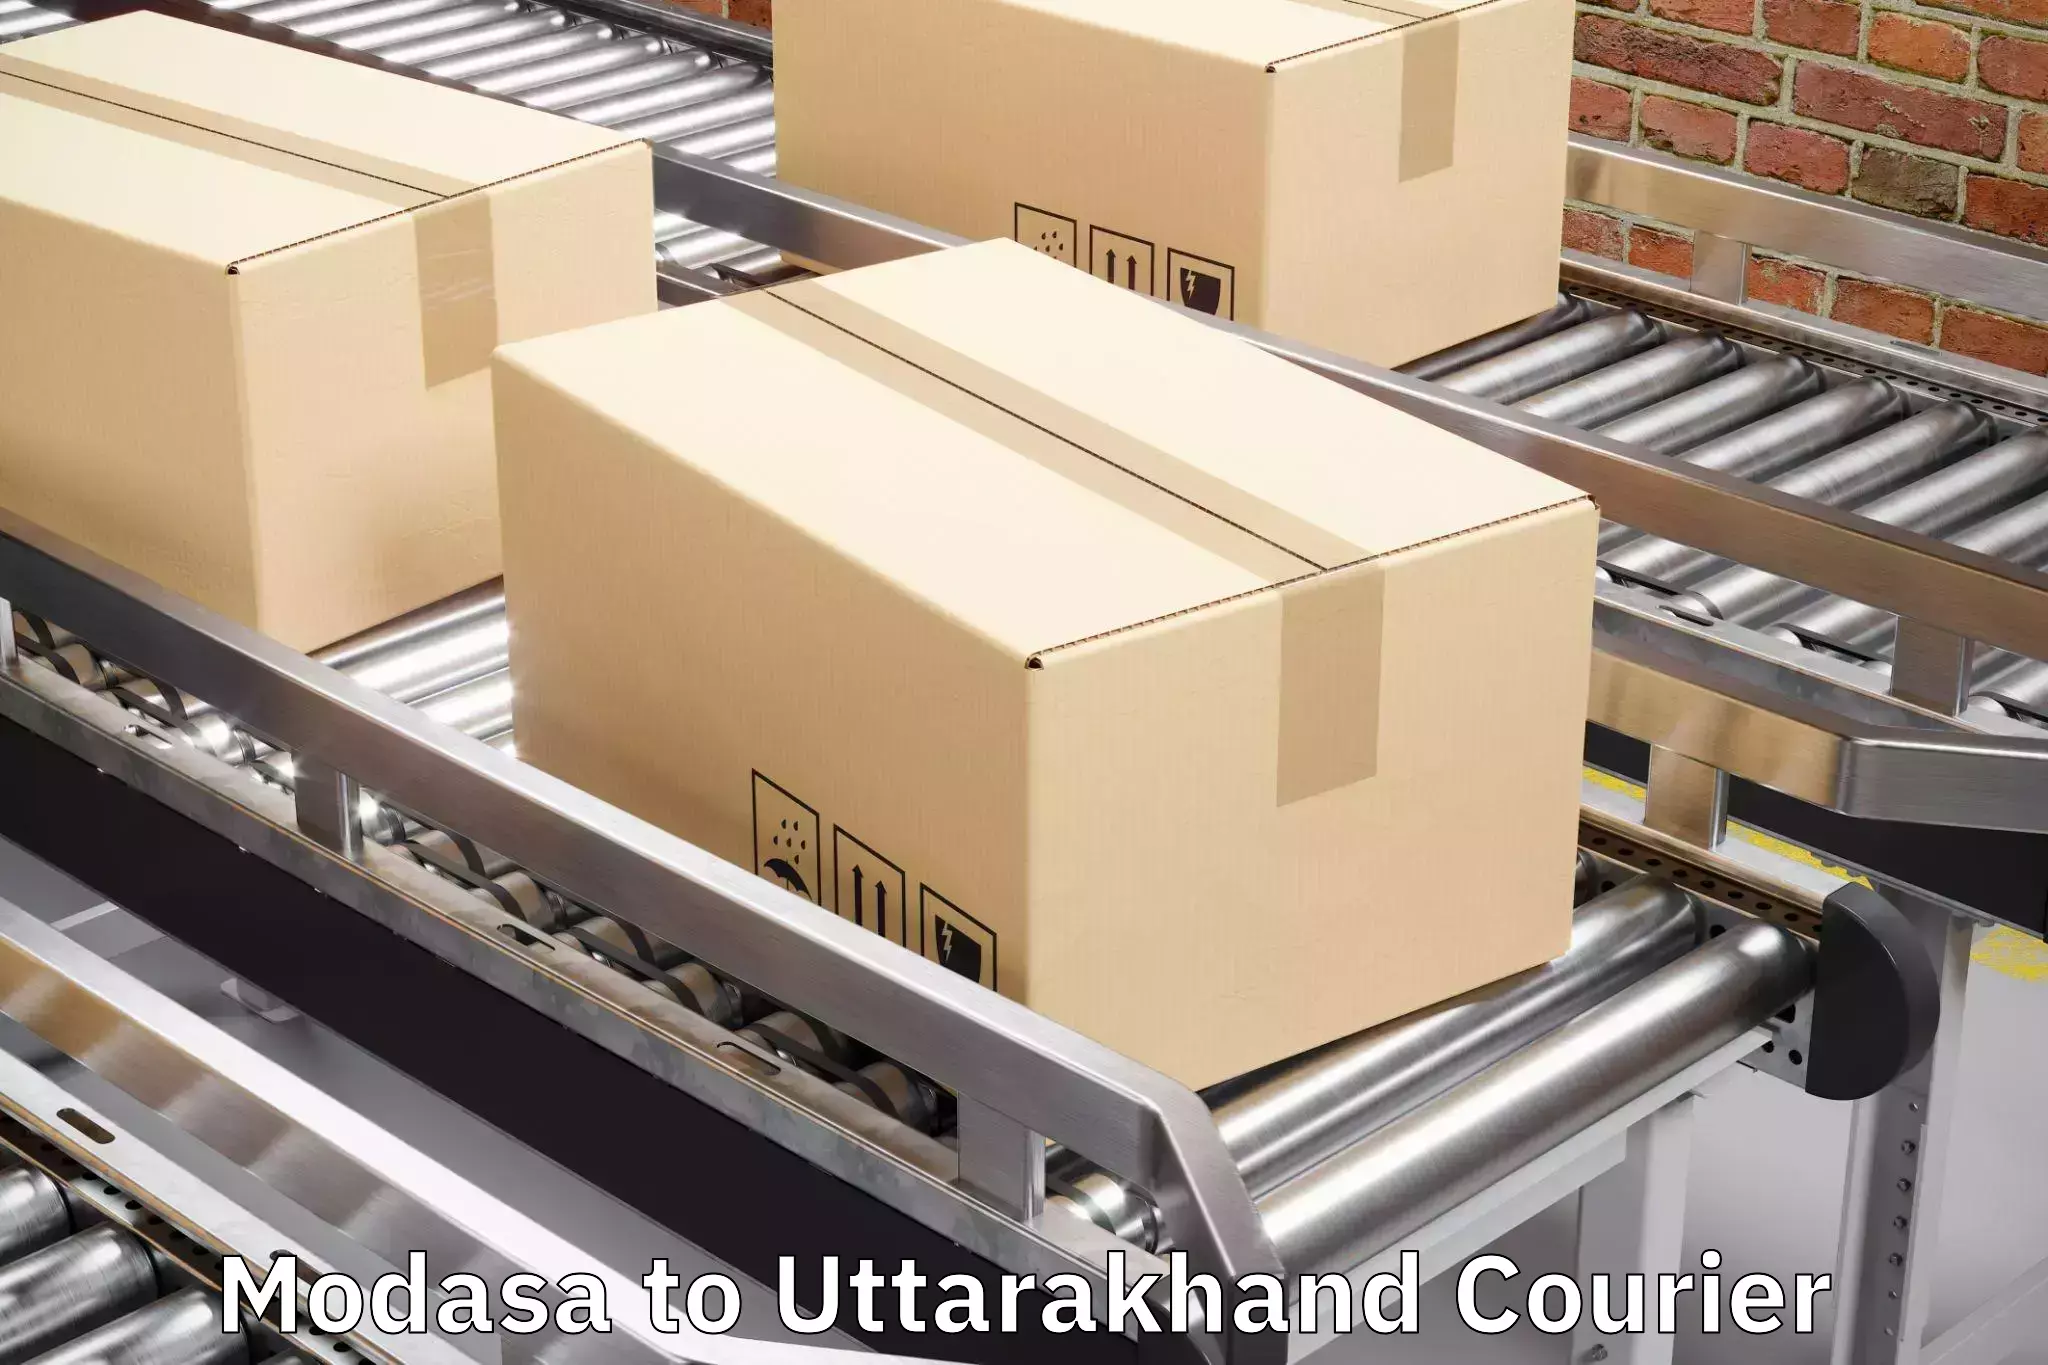 Luggage transport solutions Modasa to Kotdwara